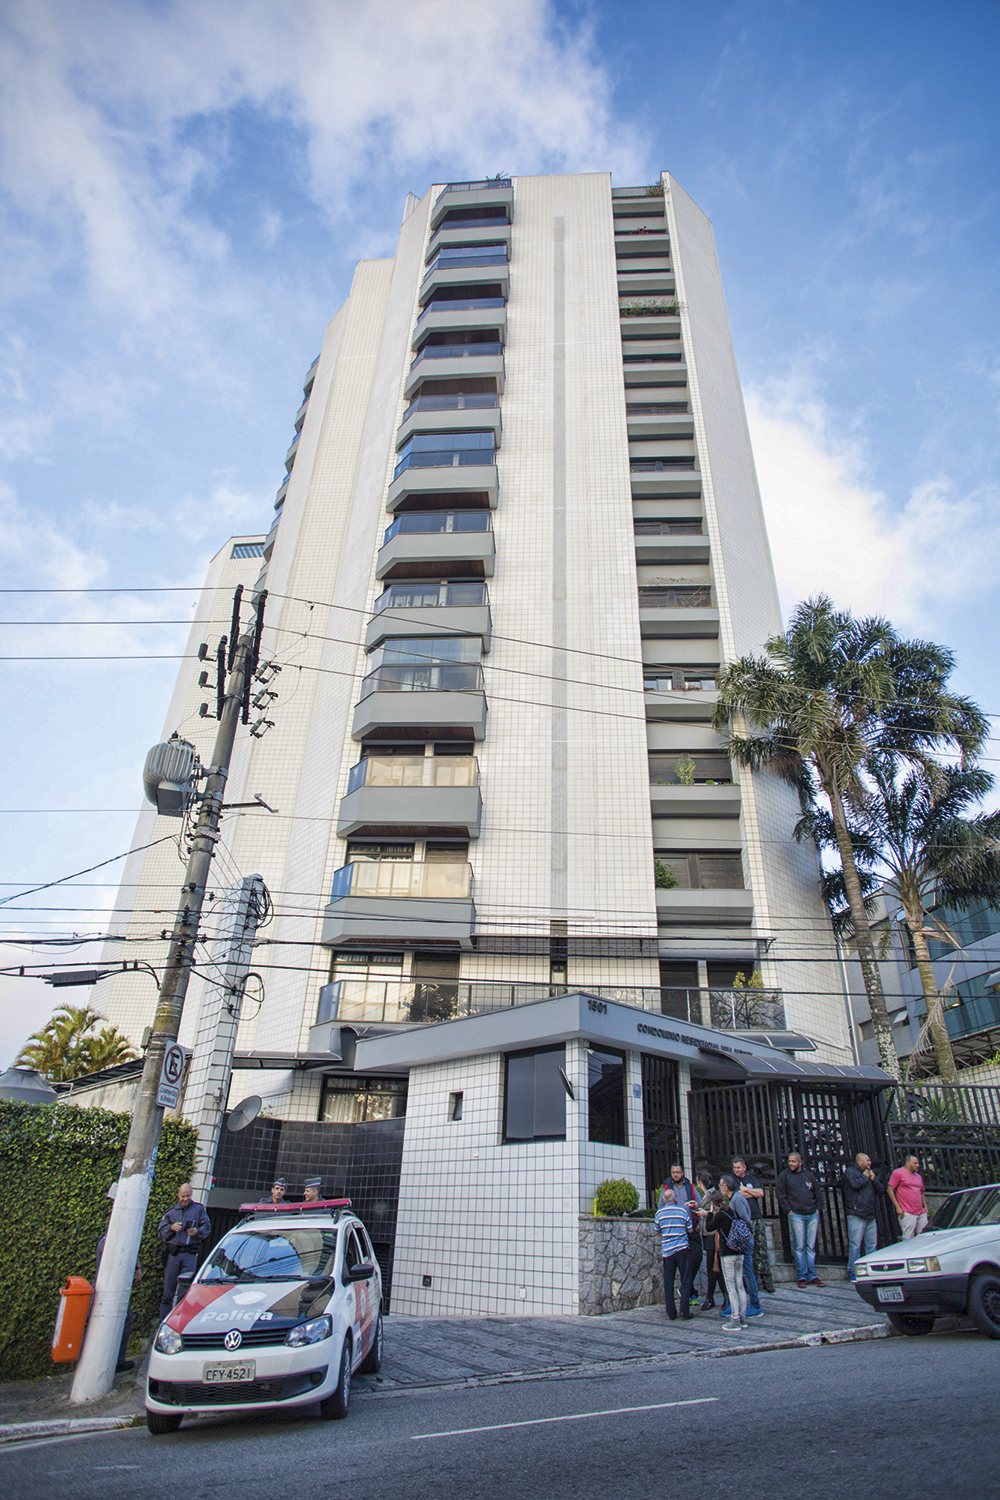 PASSADO - Apartamento em São Bernardo: residência desde a década de 90 -